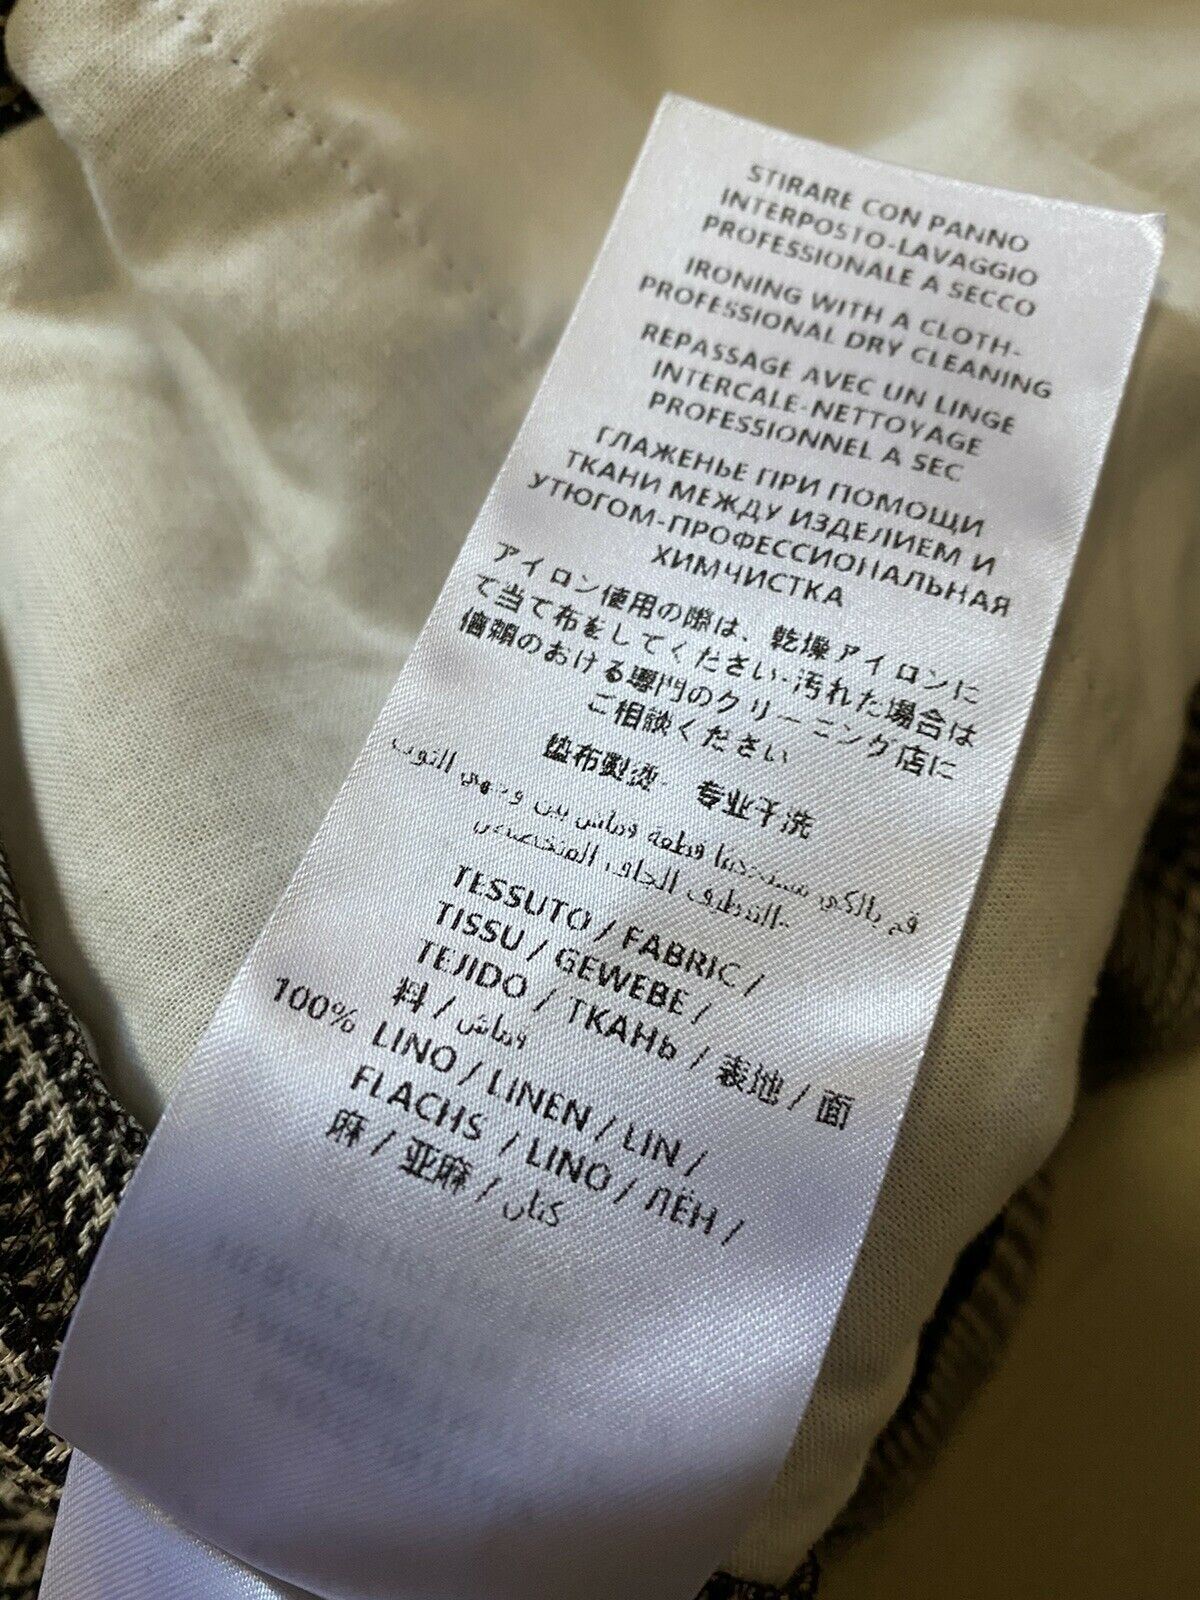 СЗТ $980 Мужские льняные короткие брюки Gucci цвета слоновой кости/черный, размер 34 США (50 ЕС) Италия